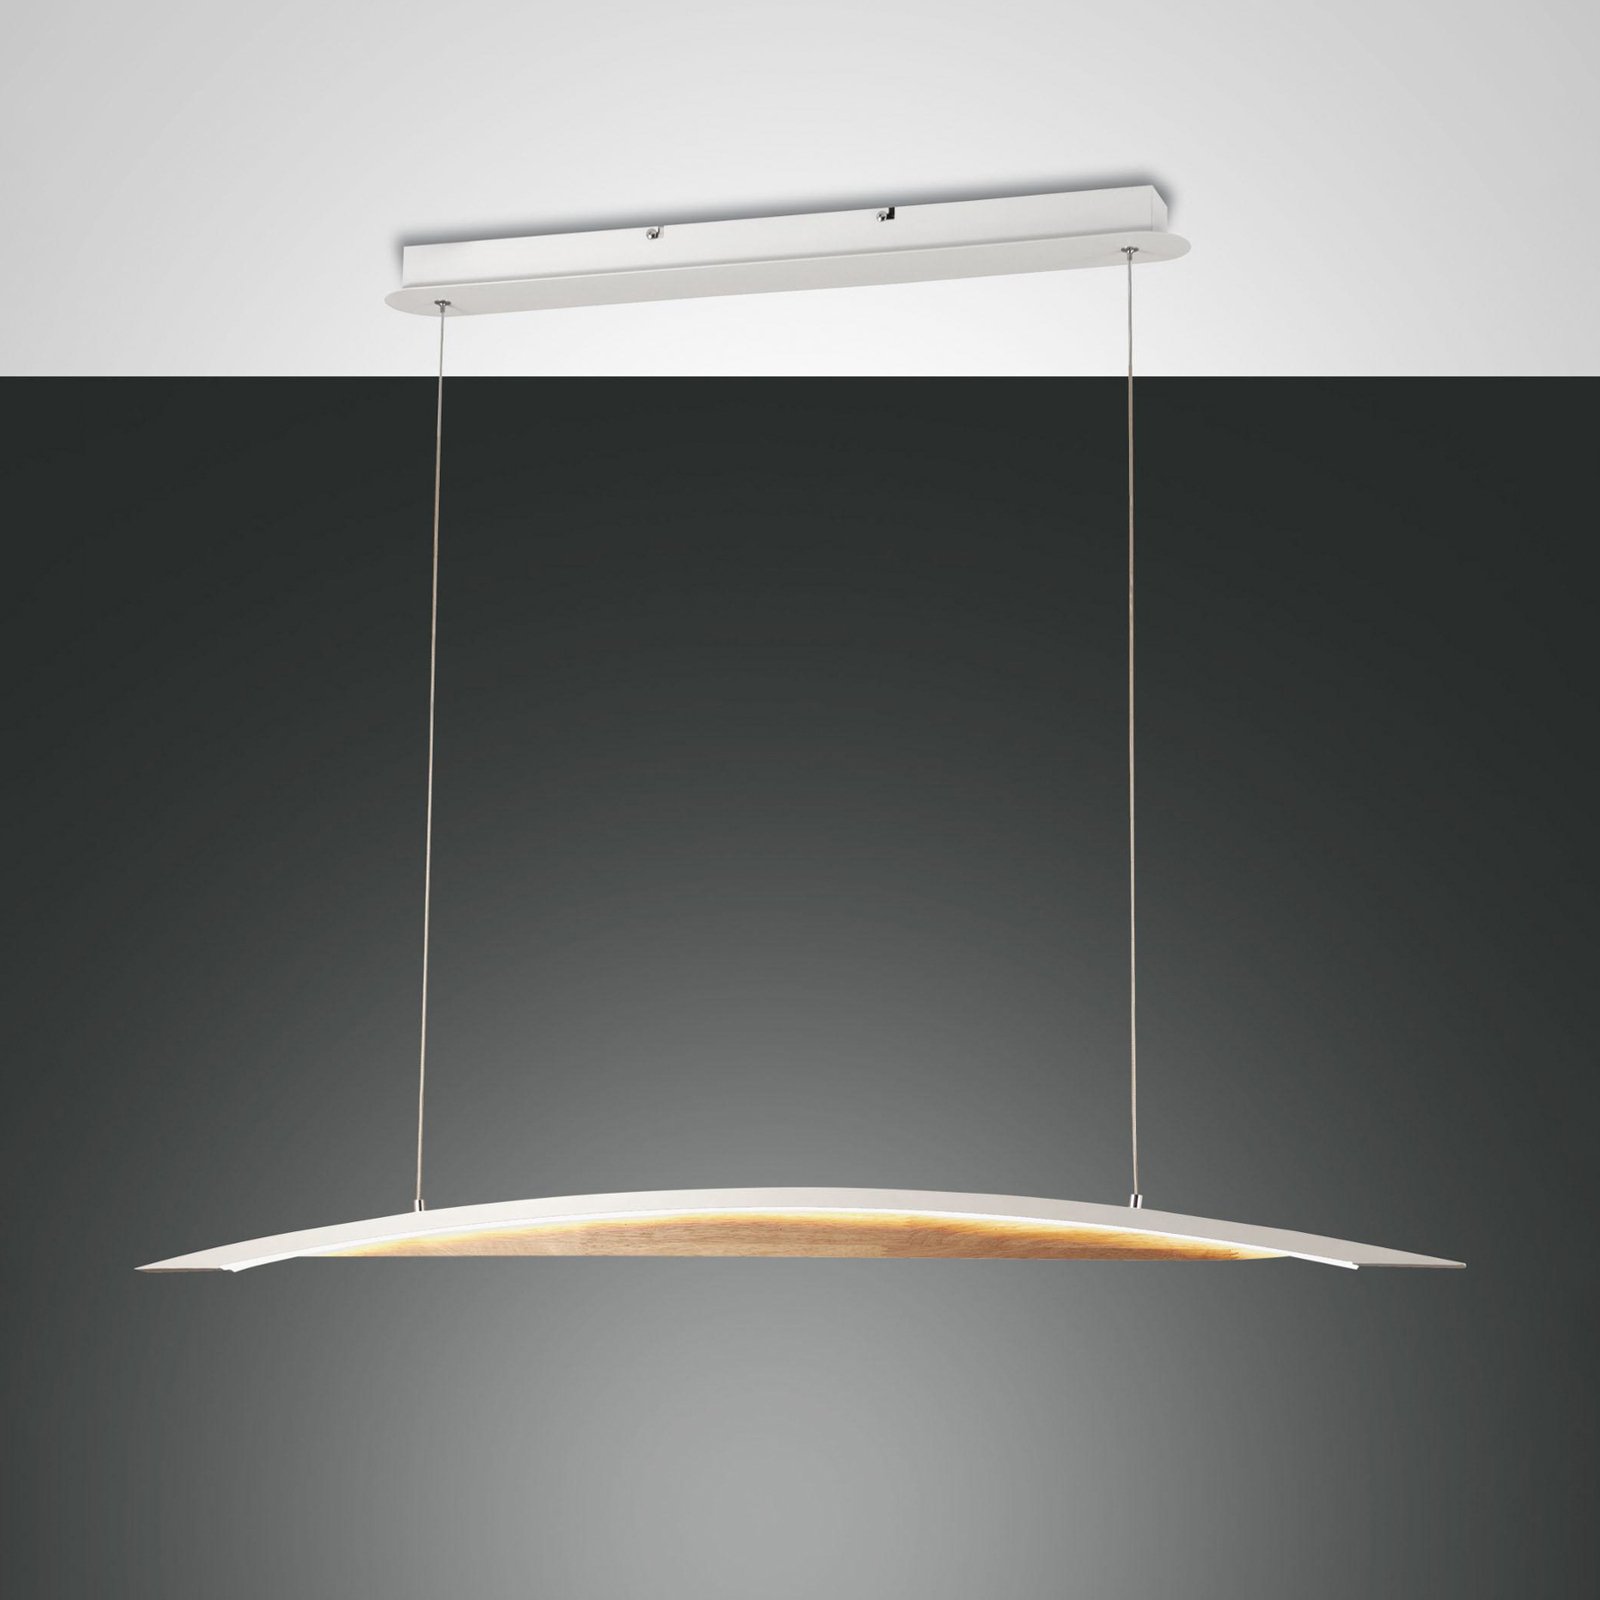 Cordoba LED-es függőlámpa, 110 cm hosszú, fém/fa, fényerőszabályzóval